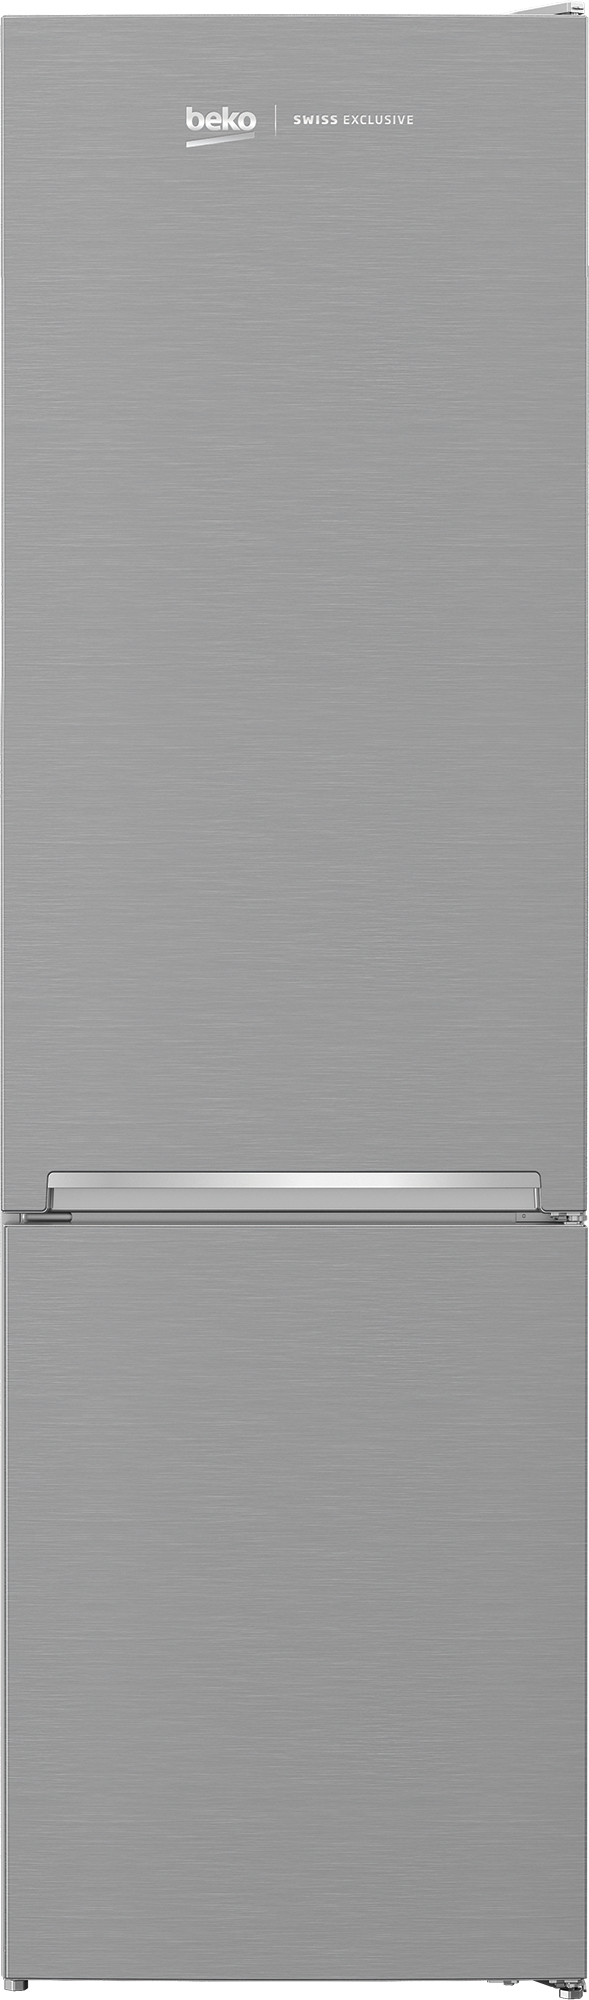 BEKO réfrigérateur-congélateur KG406I40XBCHN (362L)